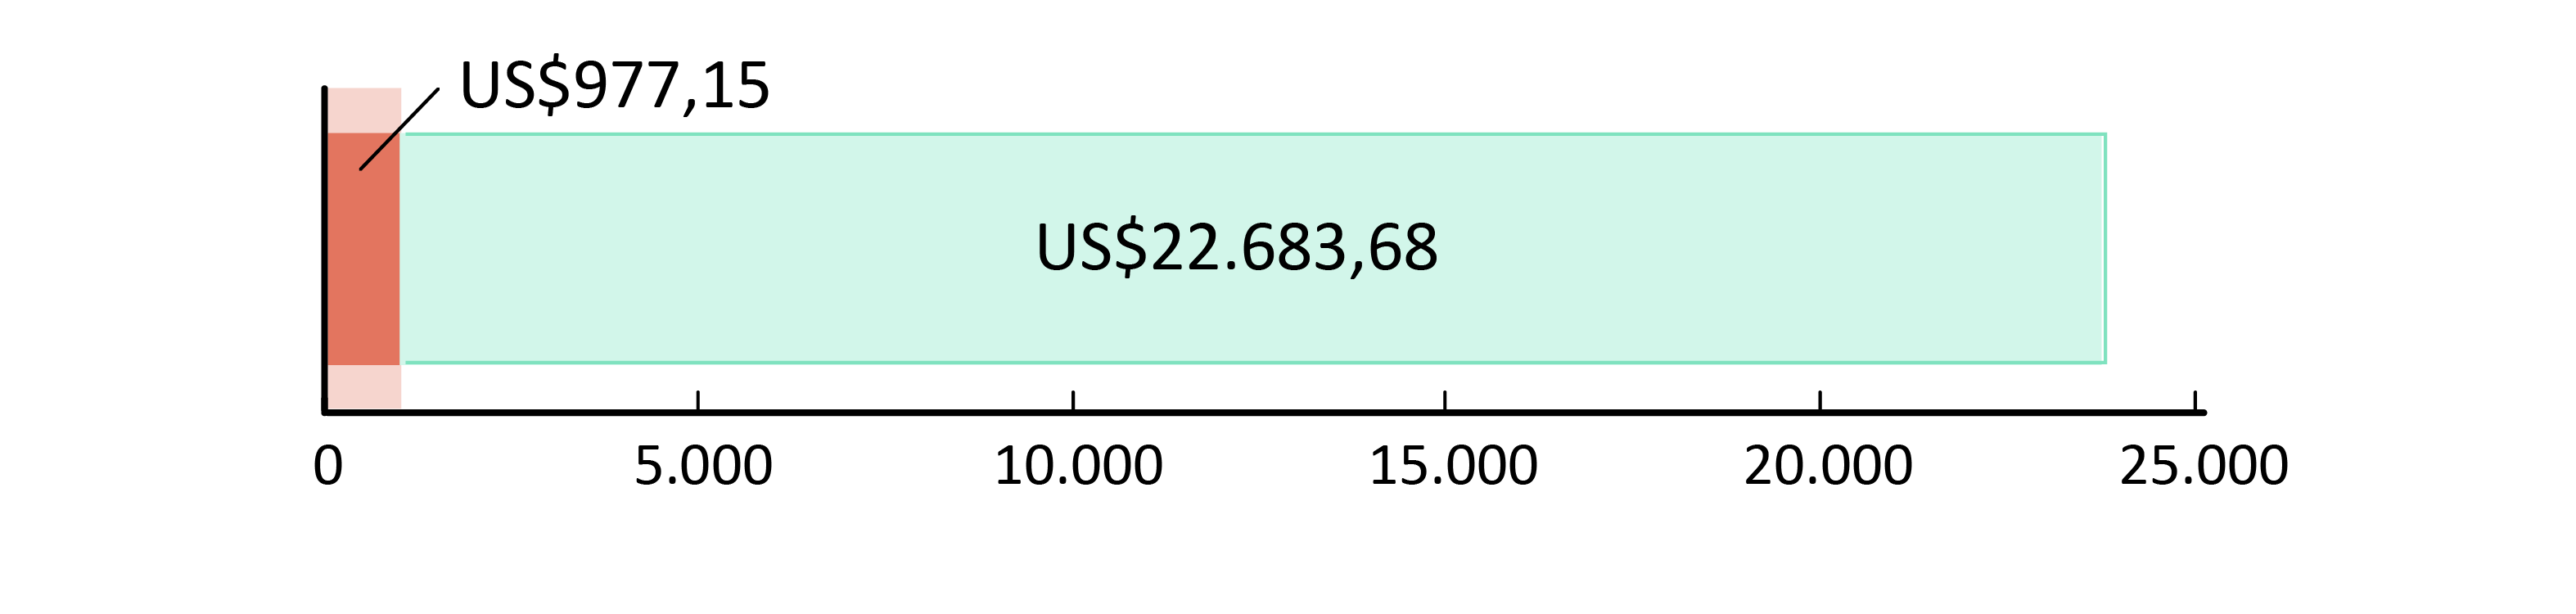 US$977,15 gastos; US$22.683,68 em caixa